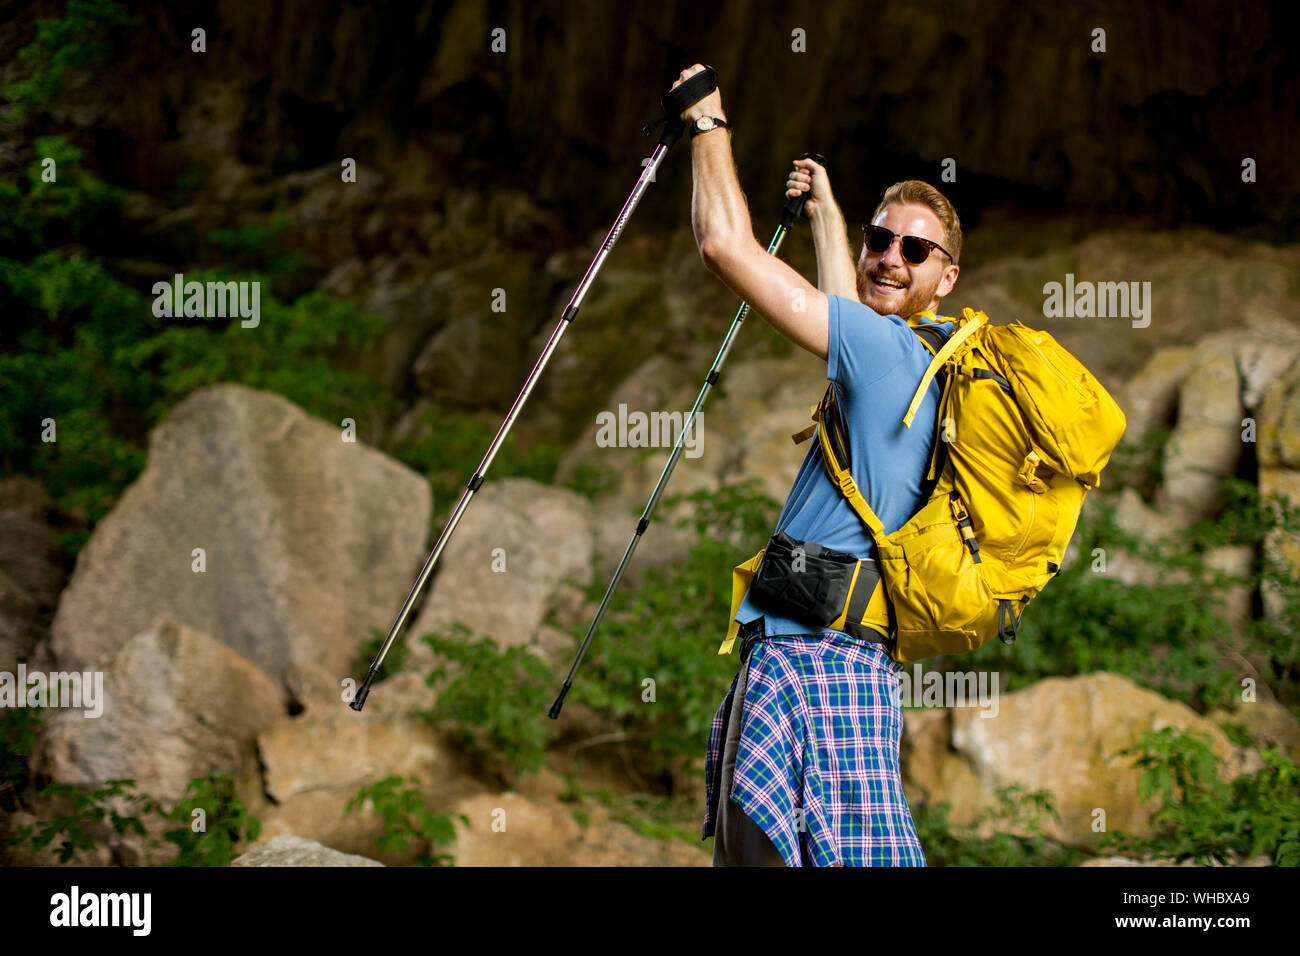 Anmutige junge Kaukasier Männlich Wanderer mit Rucksack wandern an einem sonnigen Tag Stockfoto